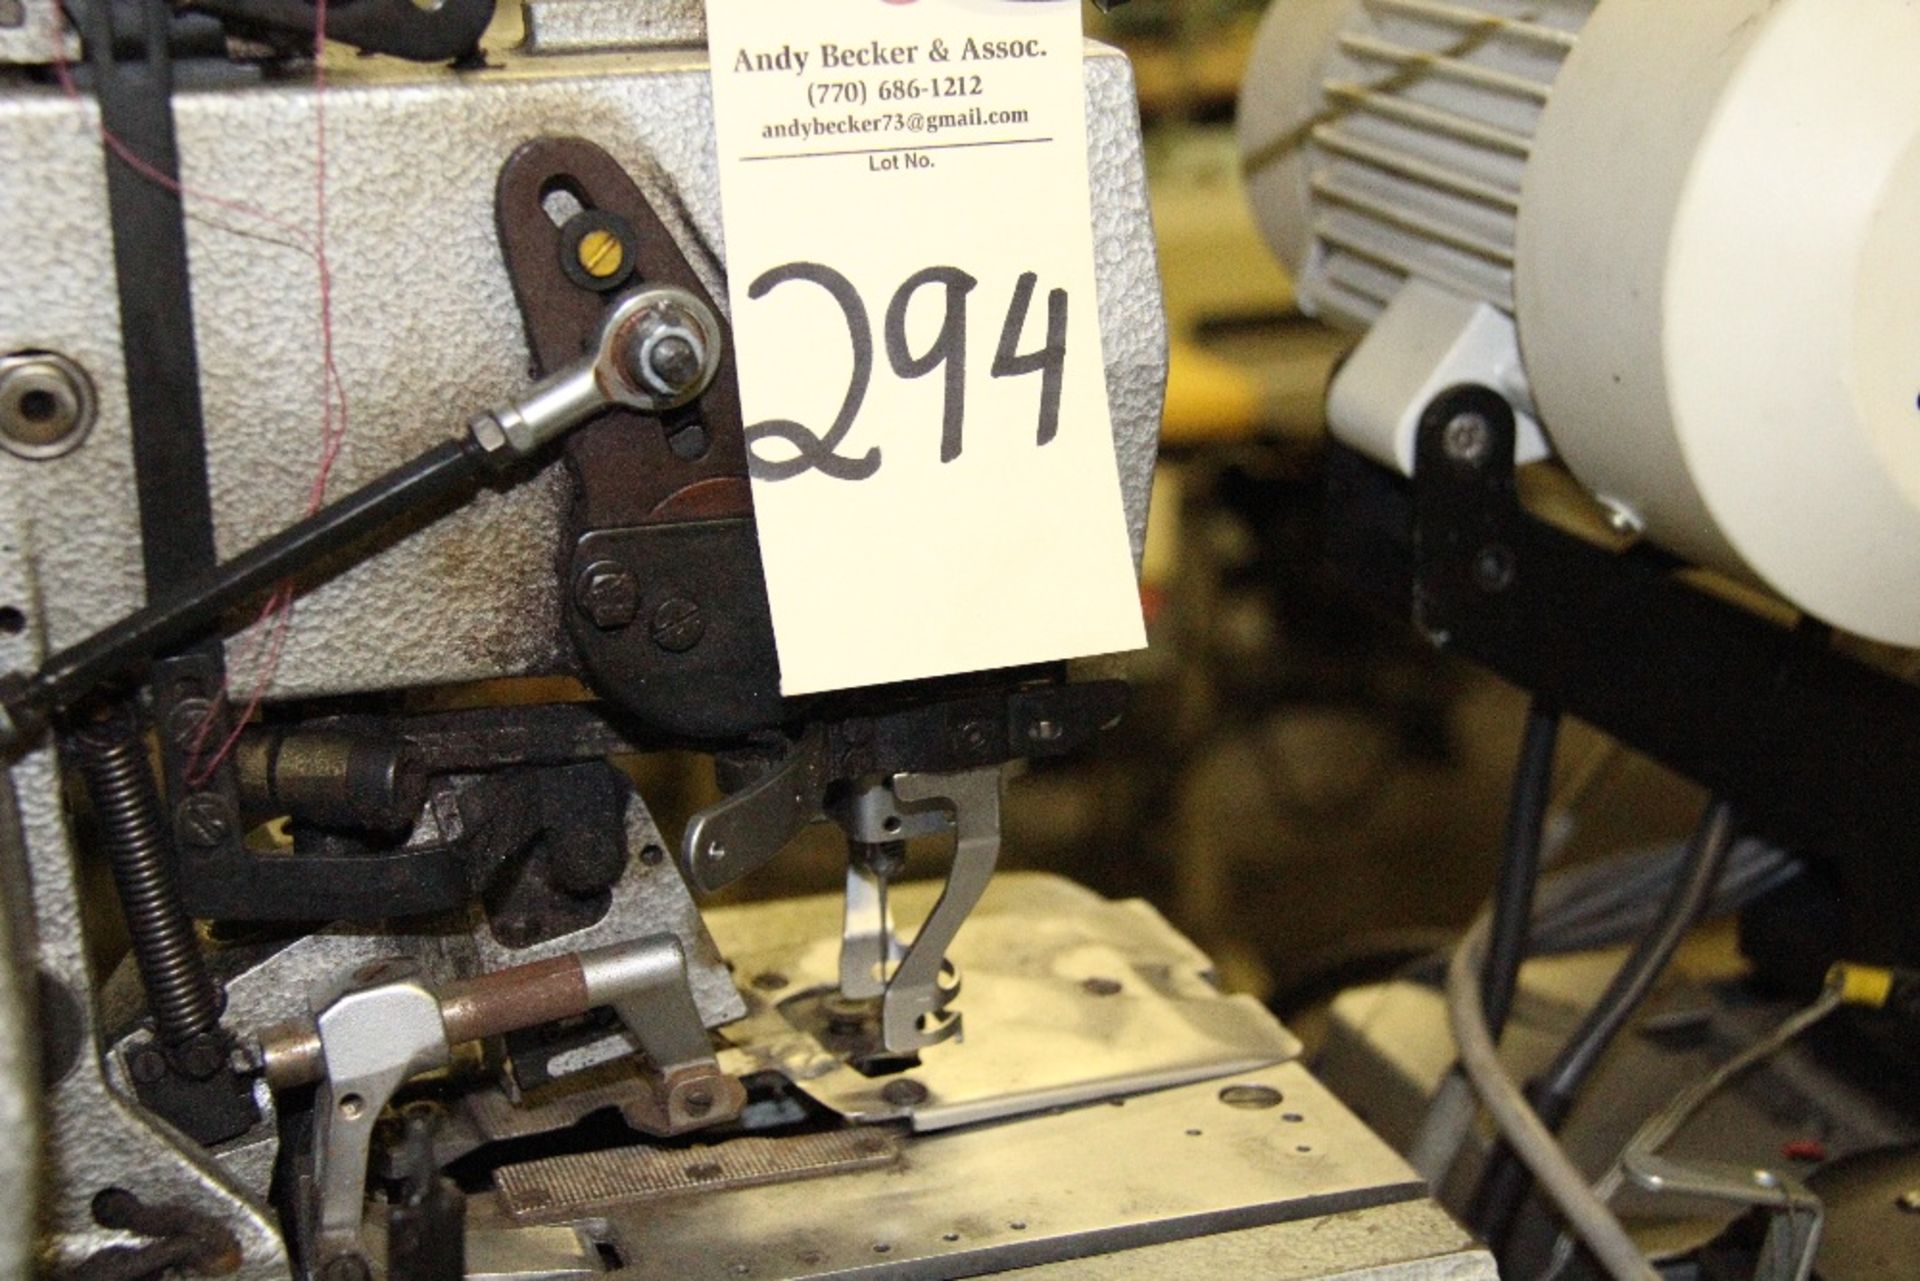 Durkopp 558-114181 Chainstitch Sewn Round Eyelet Sewing Machine - Image 3 of 3